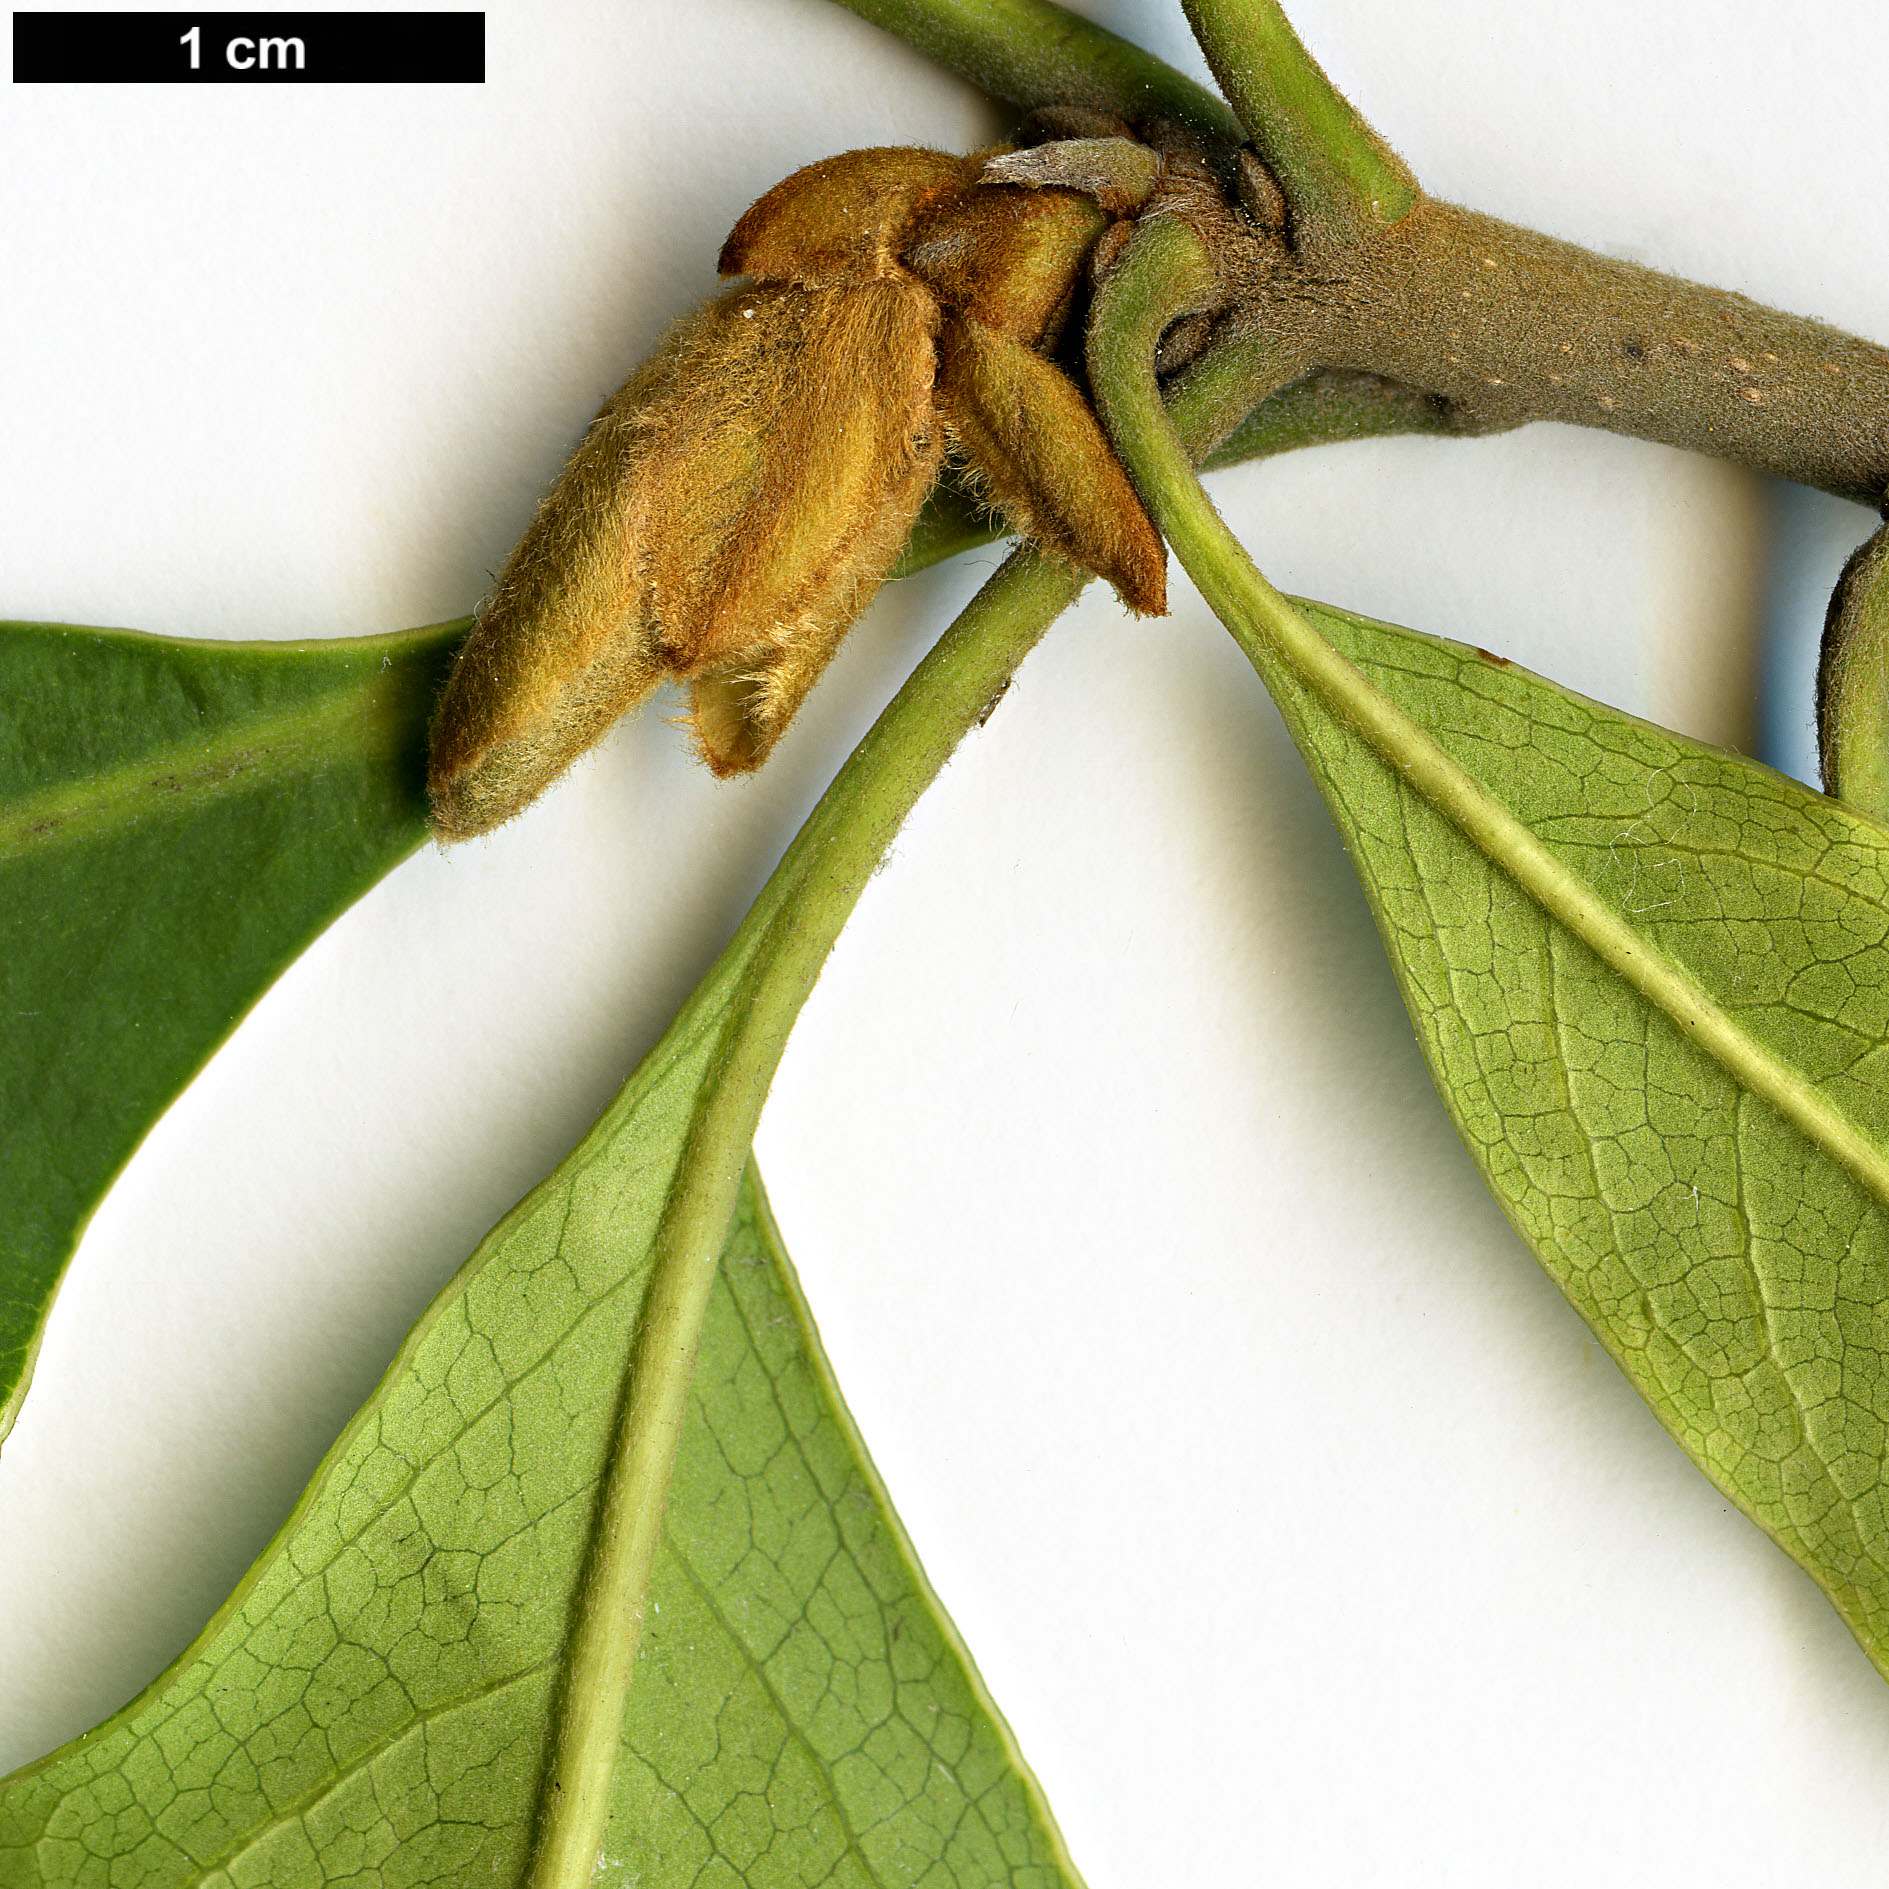 High resolution image: Family: Pittosporaceae - Genus: Pittosporum - Taxon: procerum